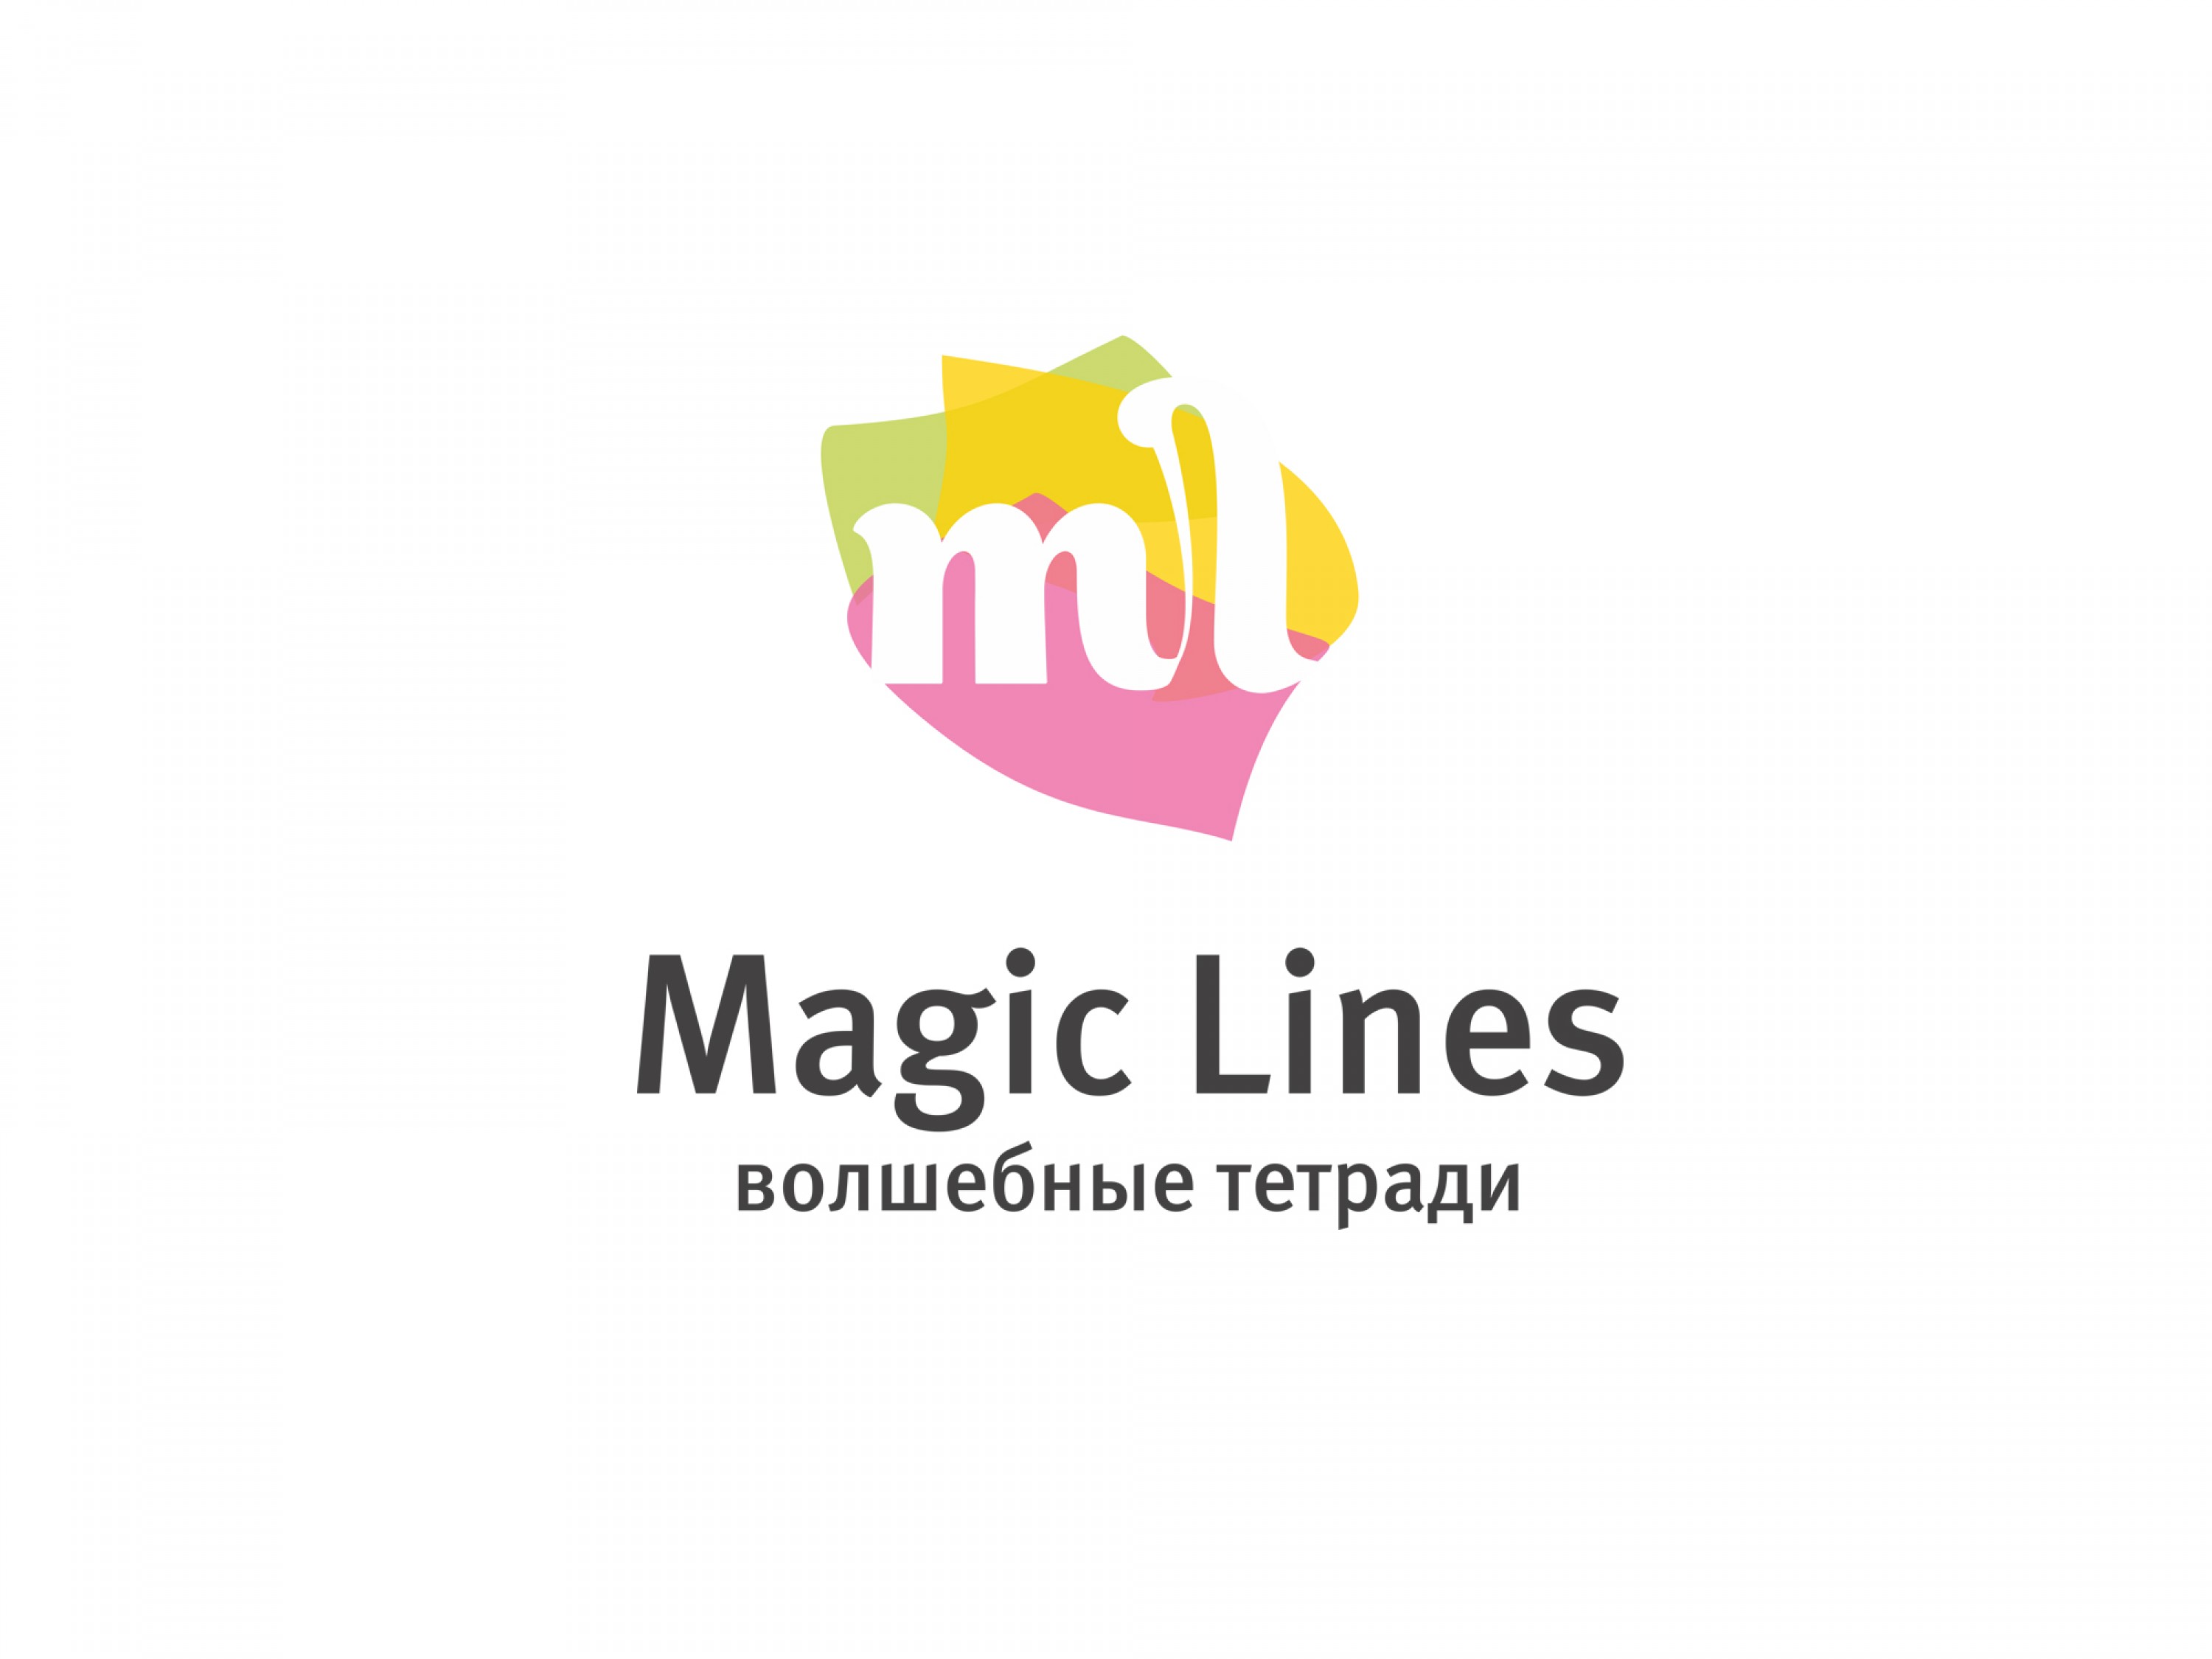 Логотип бренда Magic Lines 2014